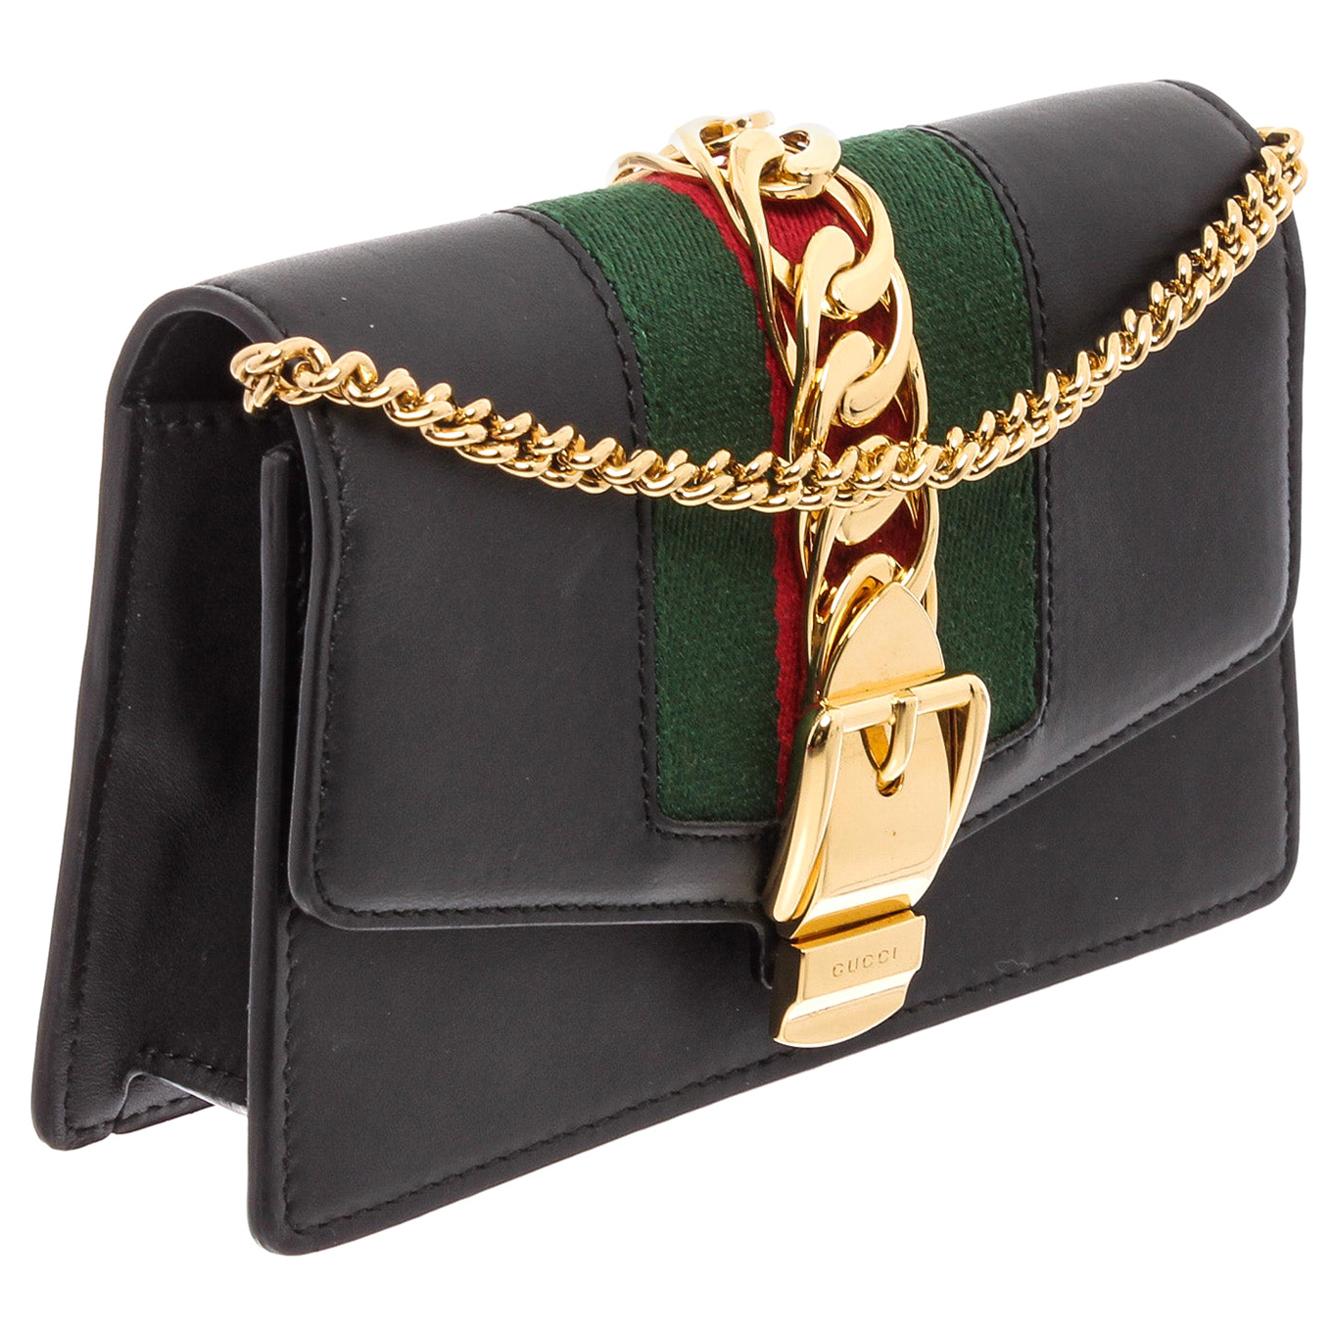 gucci black purse with chain